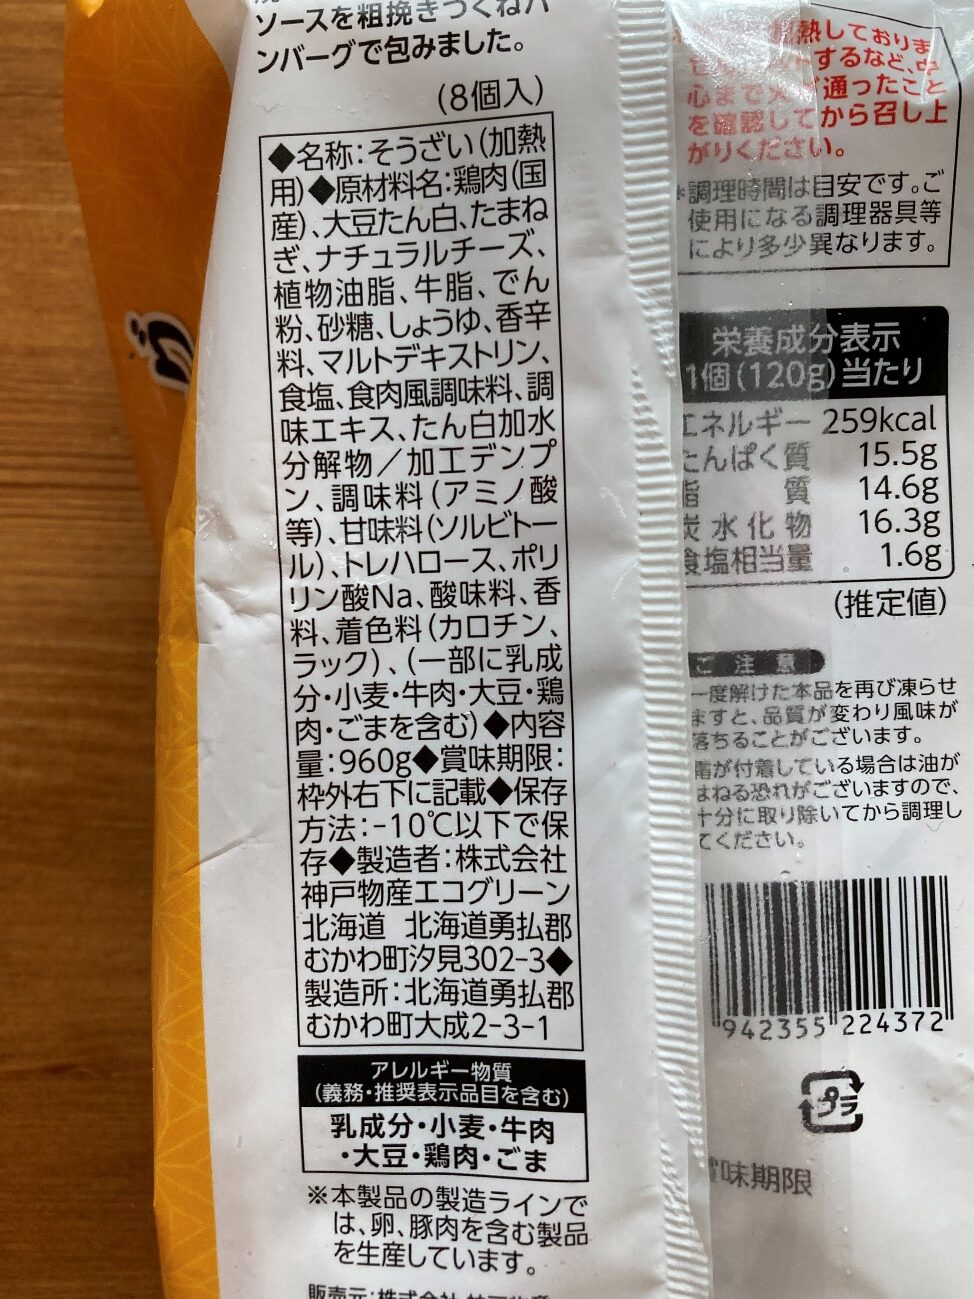 業務スーパーのチーズインつくねハンバーグの原材料名と製造者名の表記